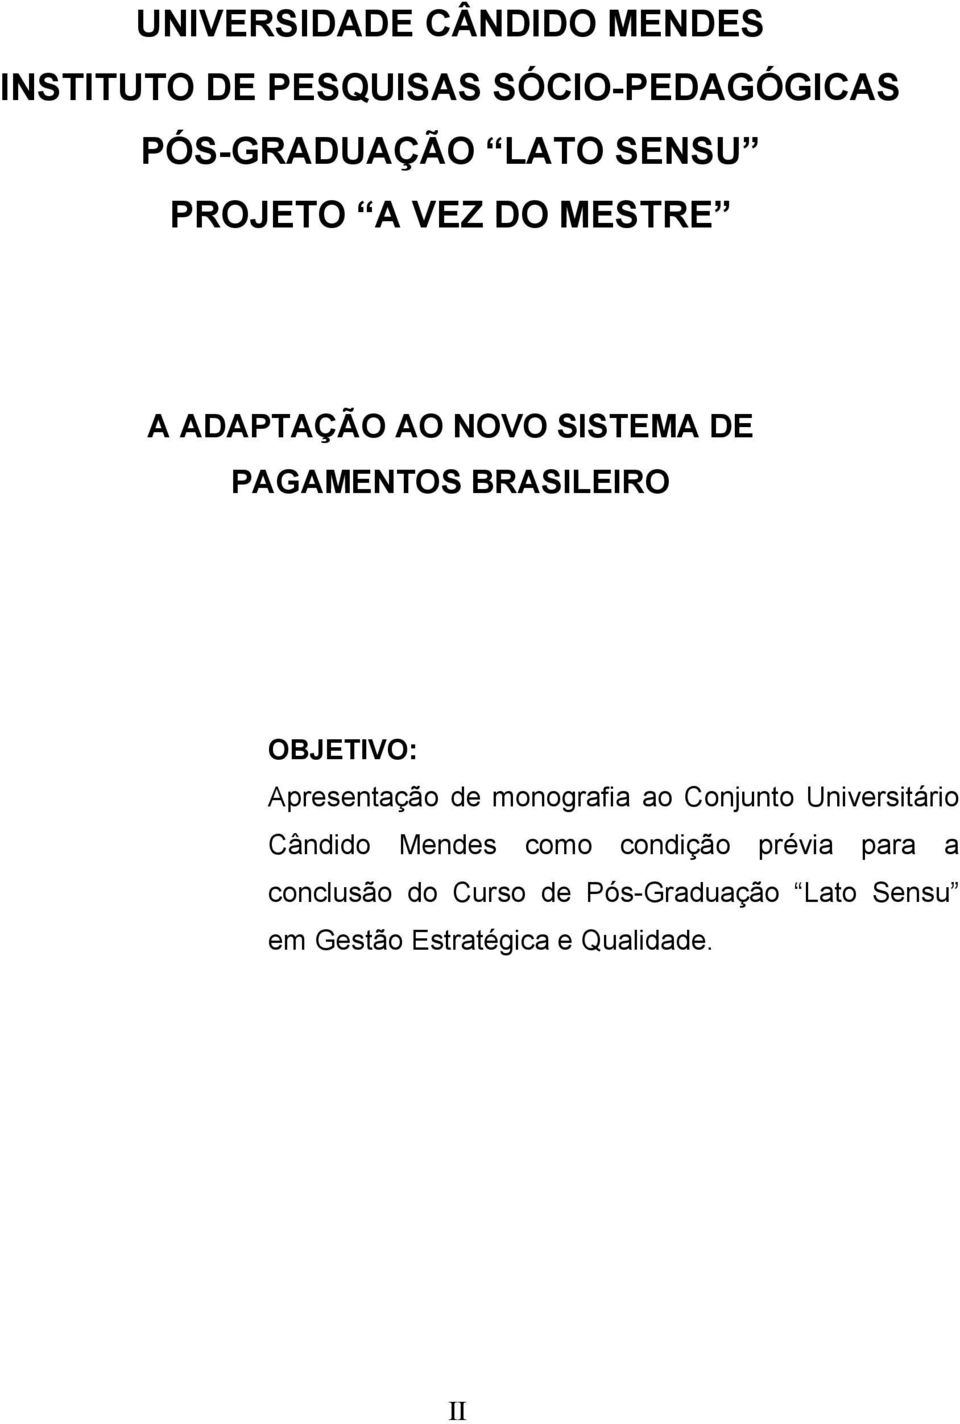 OBJETIVO: Apresentação de monografia ao Conjunto Universitário Cândido Mendes como